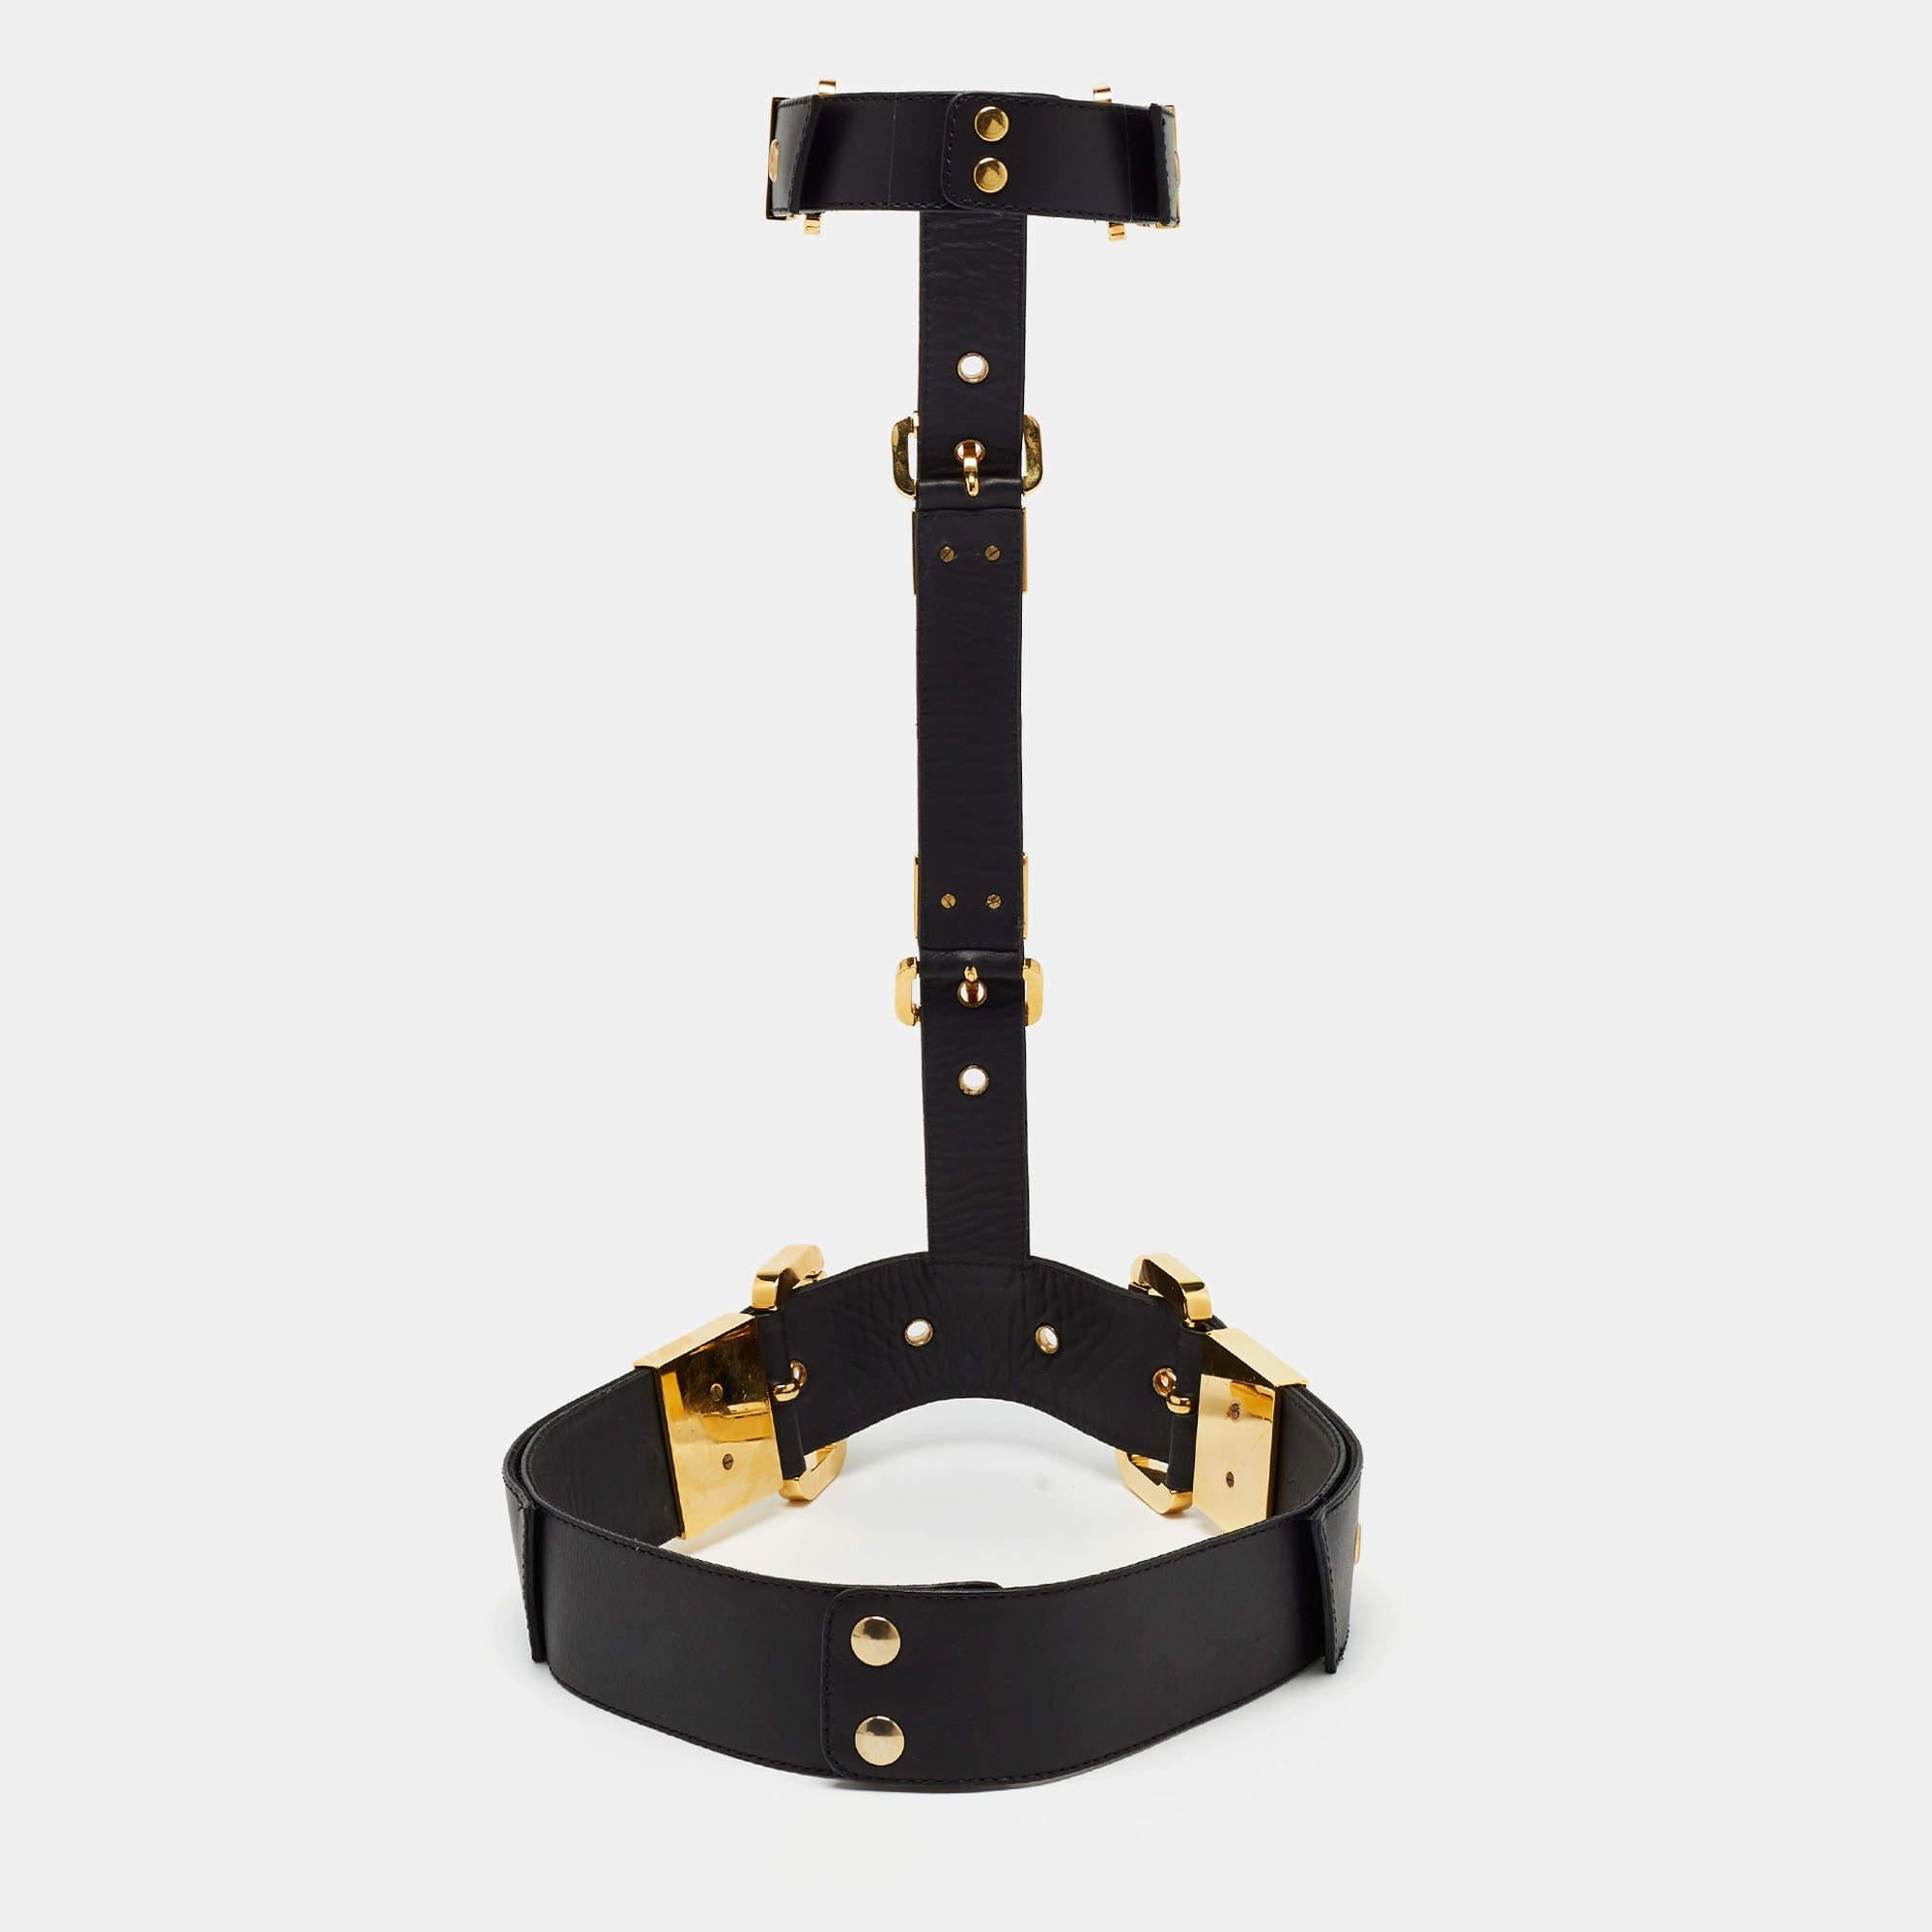 Der Body Harness Gürtel von Giuseppe Zanotti ist ein Statement. Sie ist aus schwarzem Leder gefertigt und mit goldfarbenen Metalldetails versehen, so dass Halsband und Taillengürtel miteinander verbunden sind.

